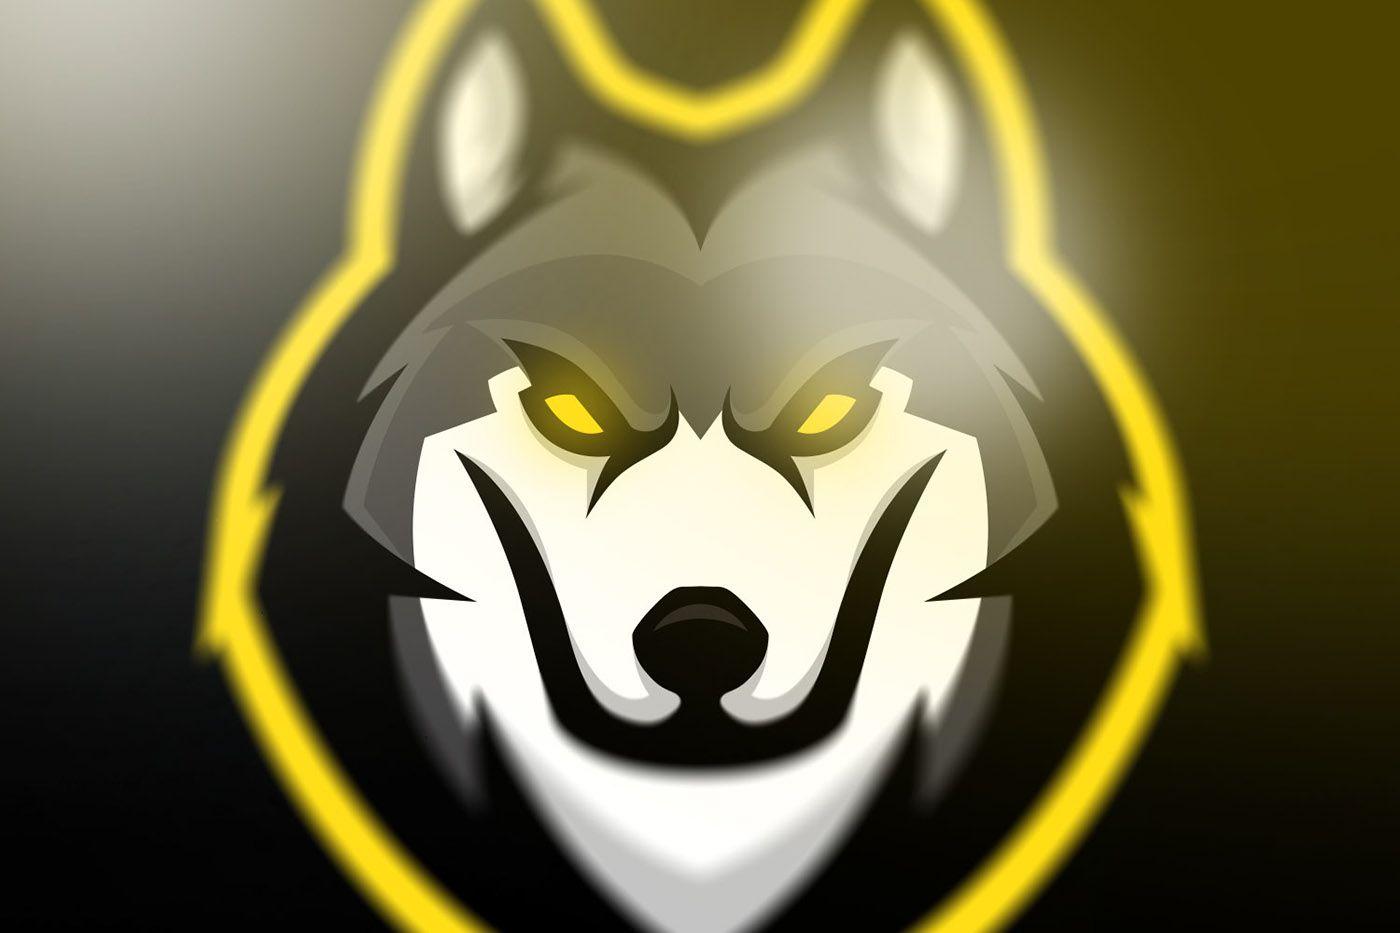 Wolves Logo - Wolves mascot logo [SOLD] on Behance